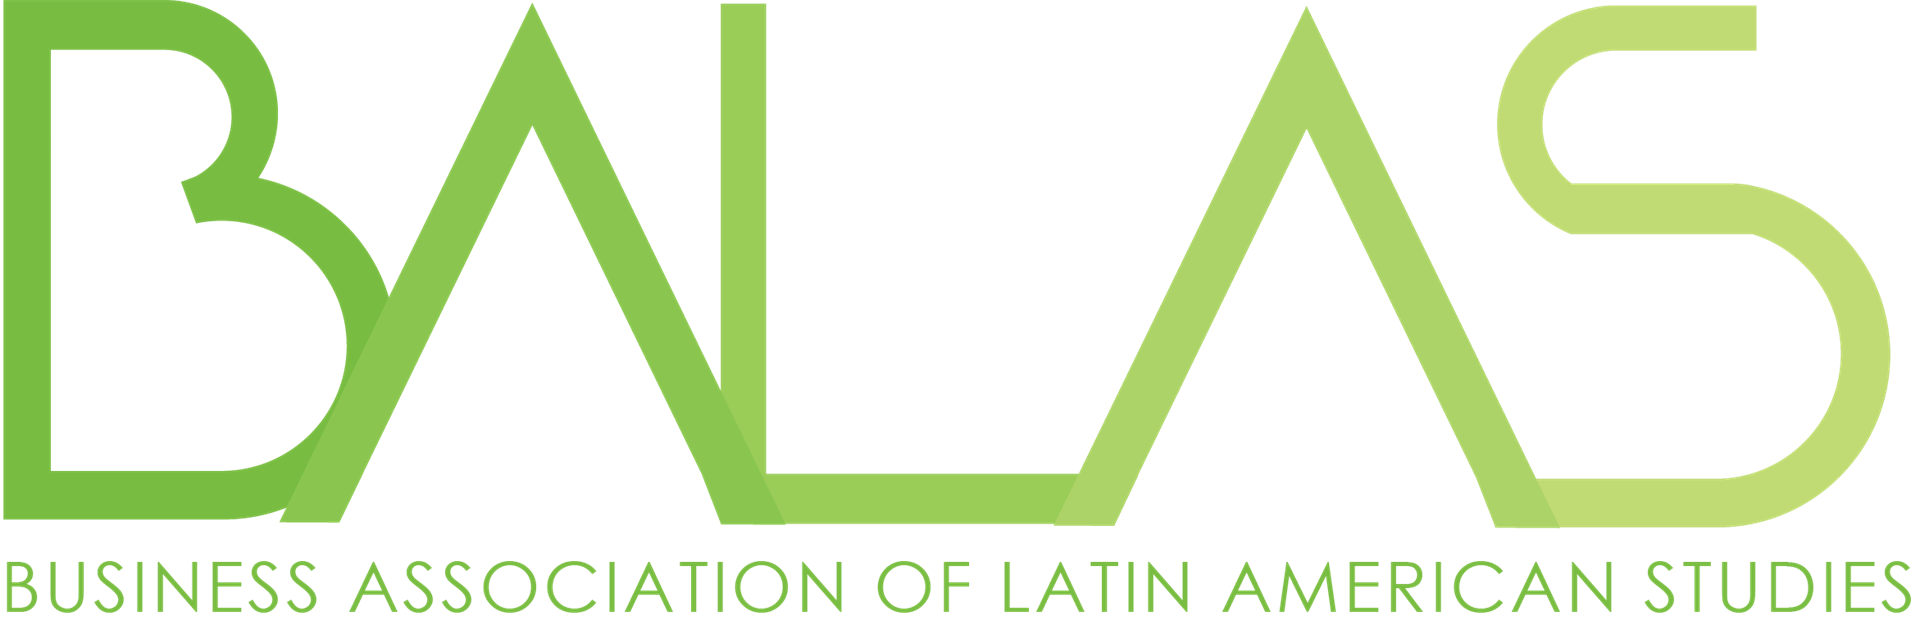 BALAS logo